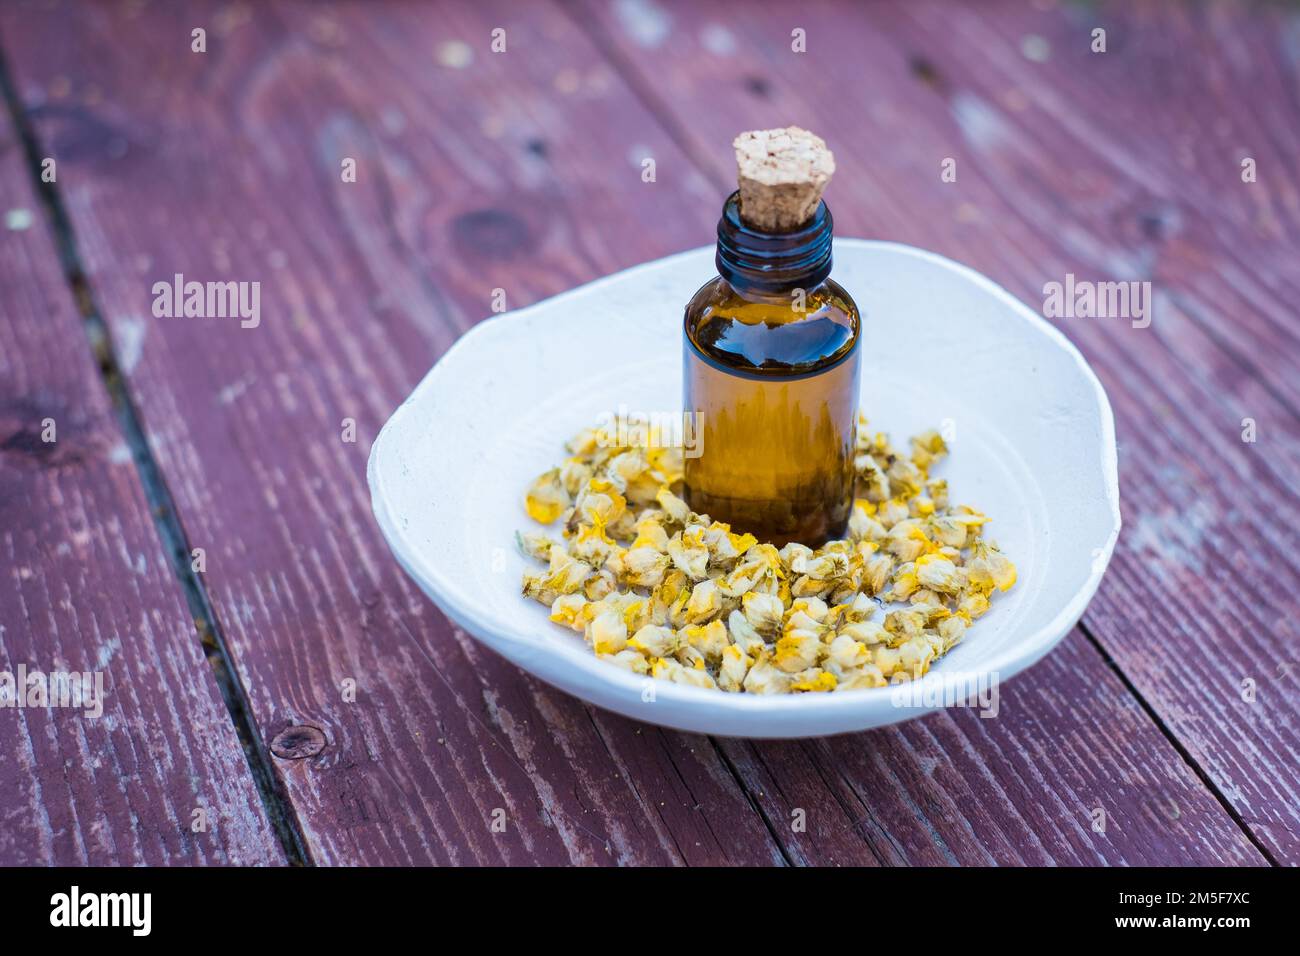 Trockener Kräutertee aus großen Mulleinblüten oder Verbascum thapsus in einer kleinen Tonschüssel mit brauner Arzneimittelflasche auf Holzhintergrund. Stockfoto